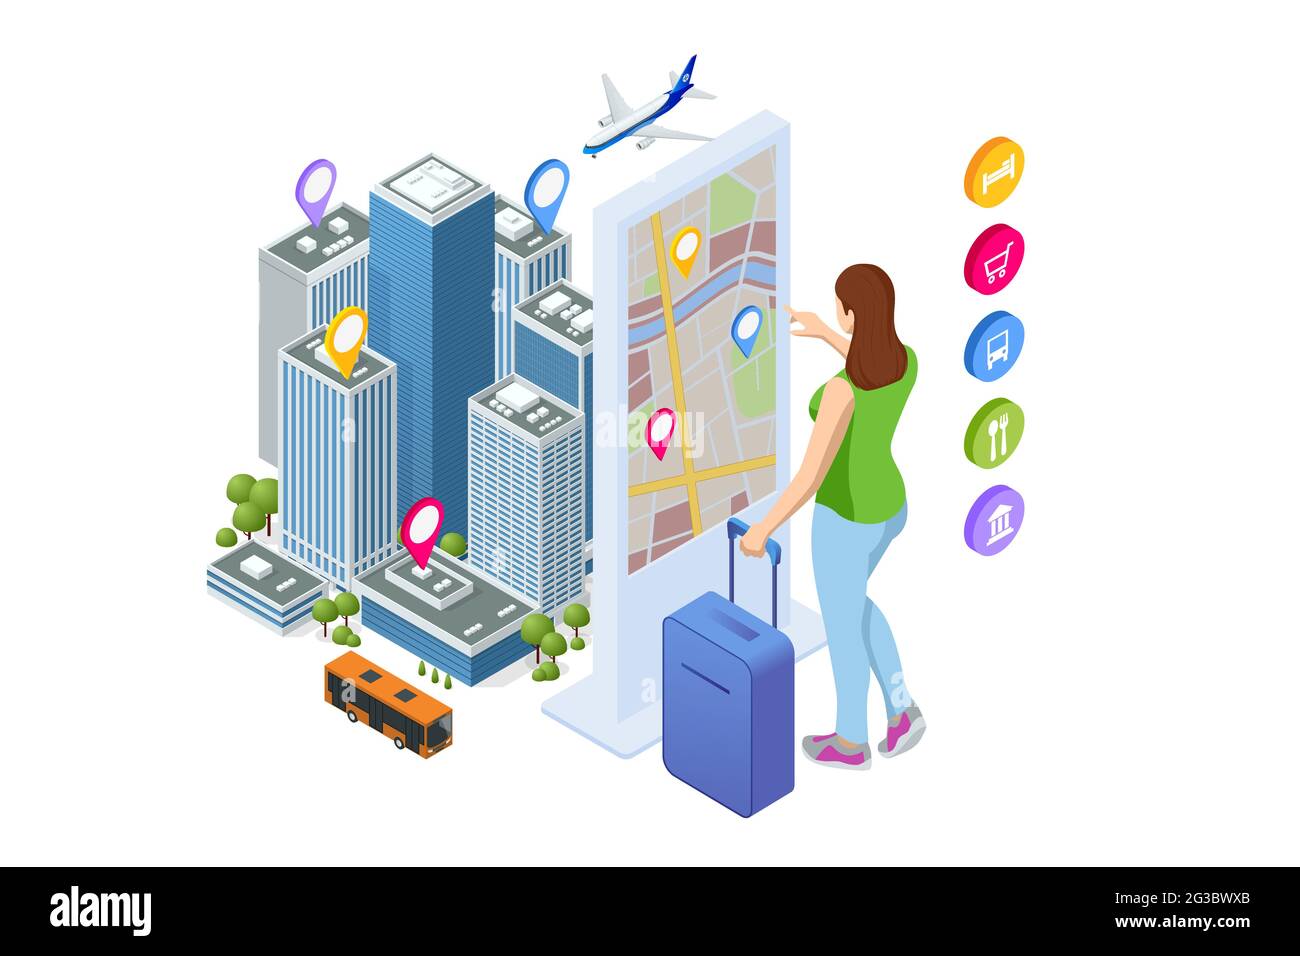 Smart City Exhibition. Frau mit interaktivem Touchscreen-Display und virtueller Karte. Isometrische Stadtkarte mit mobiler GPS-Navigationsanwendung Stock Vektor